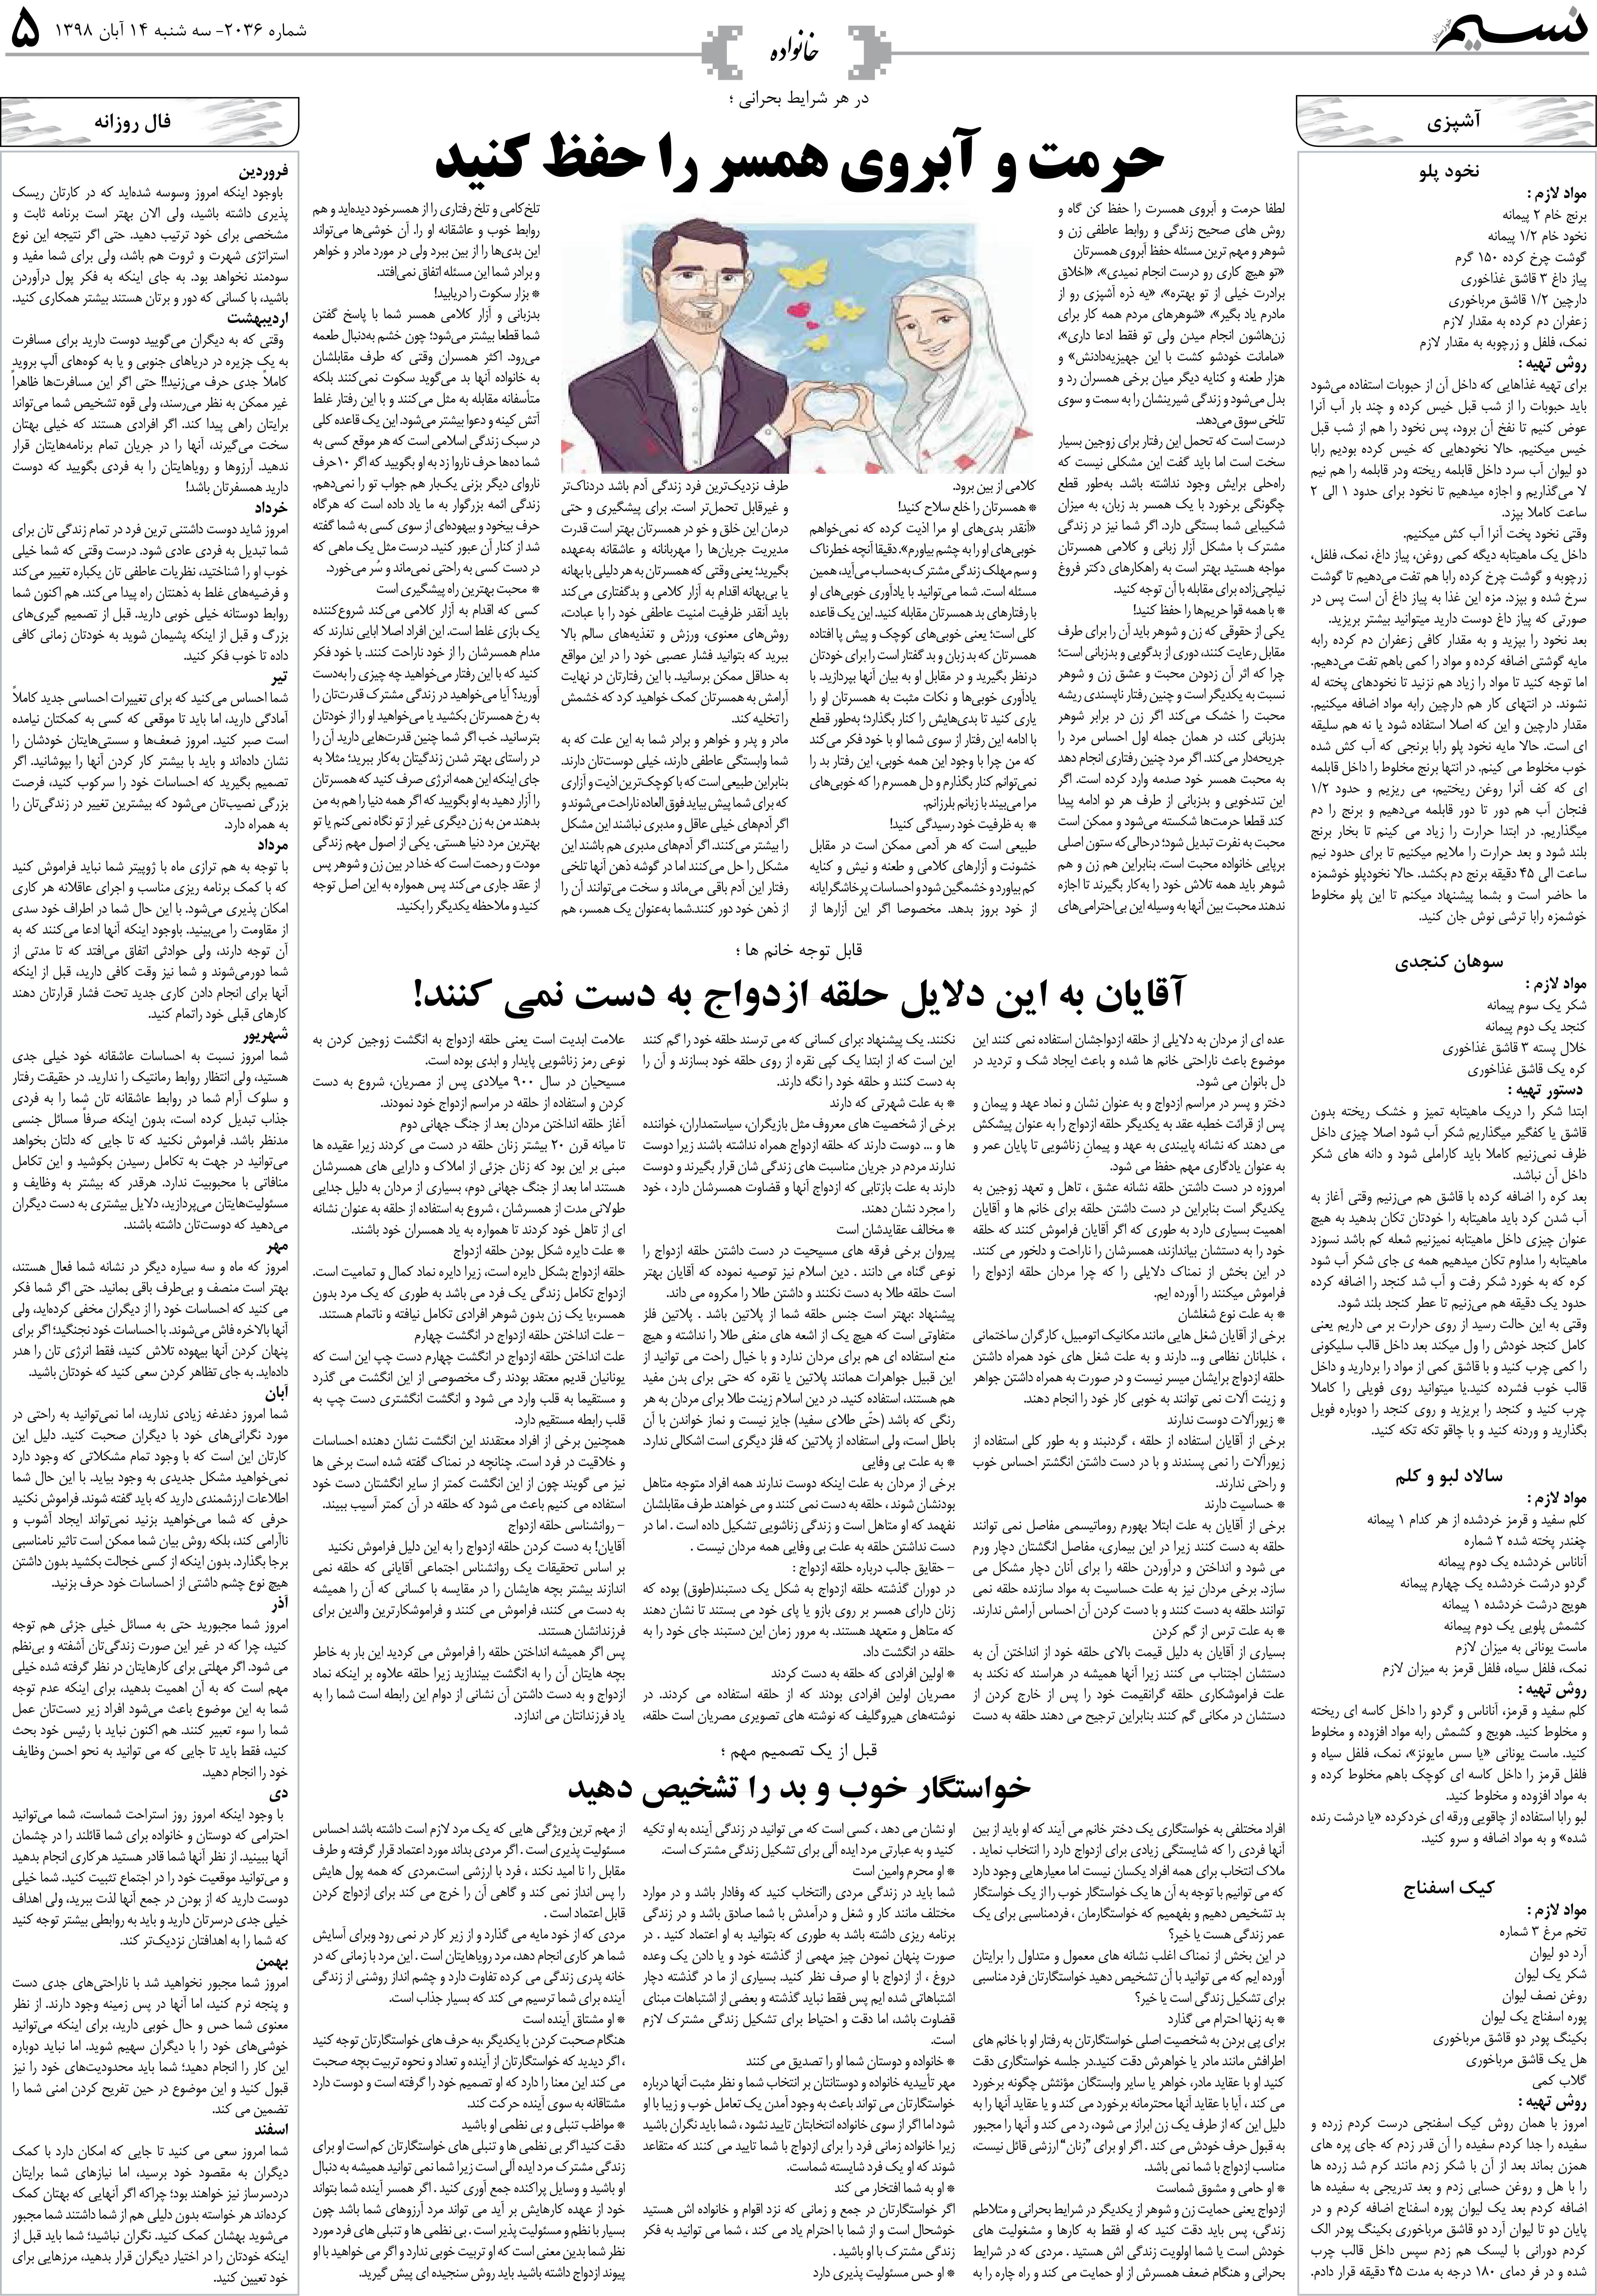 صفحه خانواده روزنامه نسیم شماره 2036